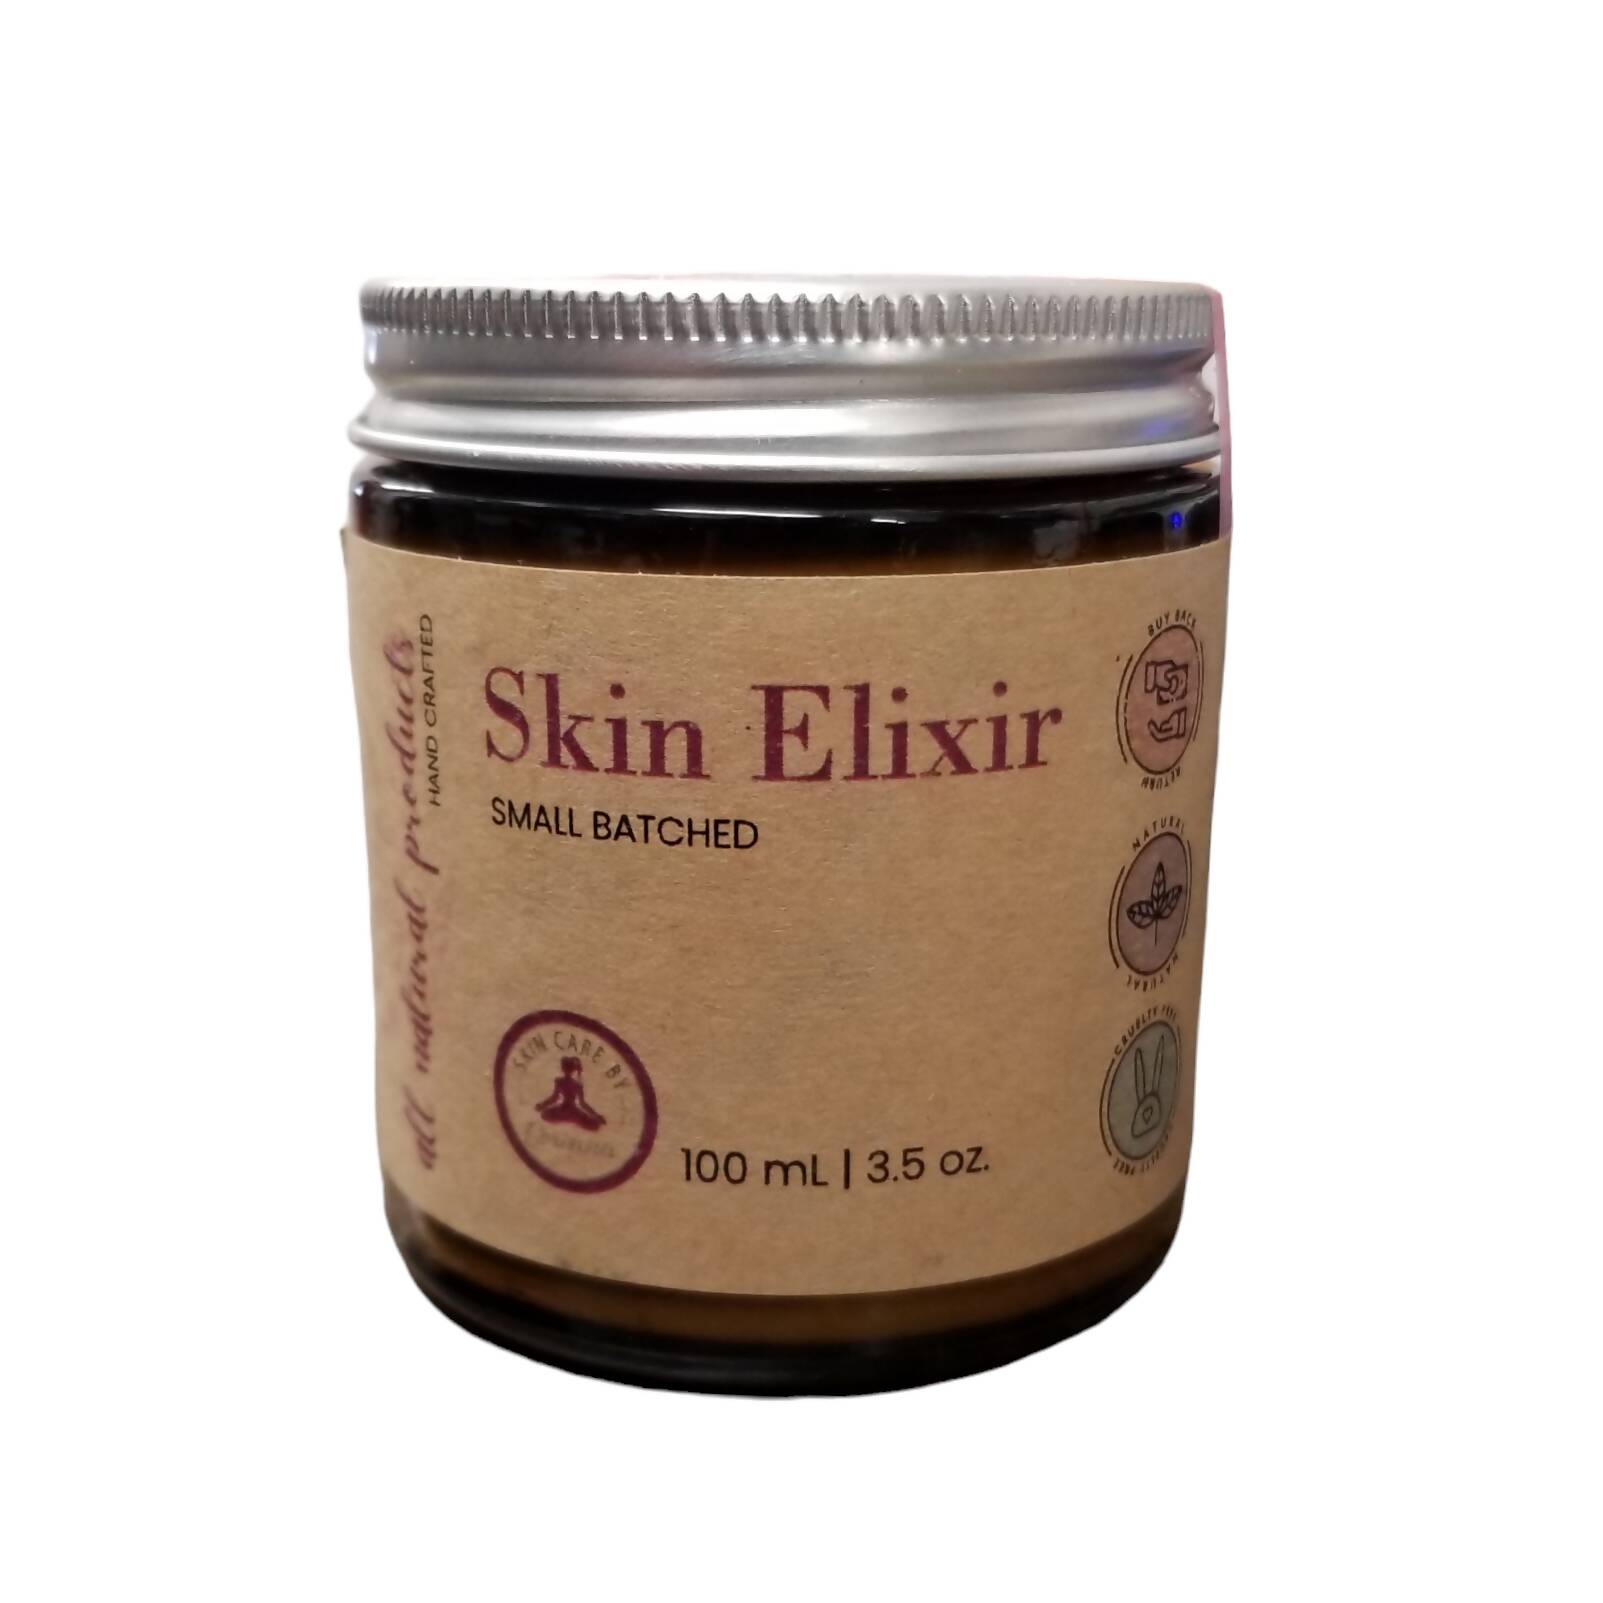 Skin Elixir